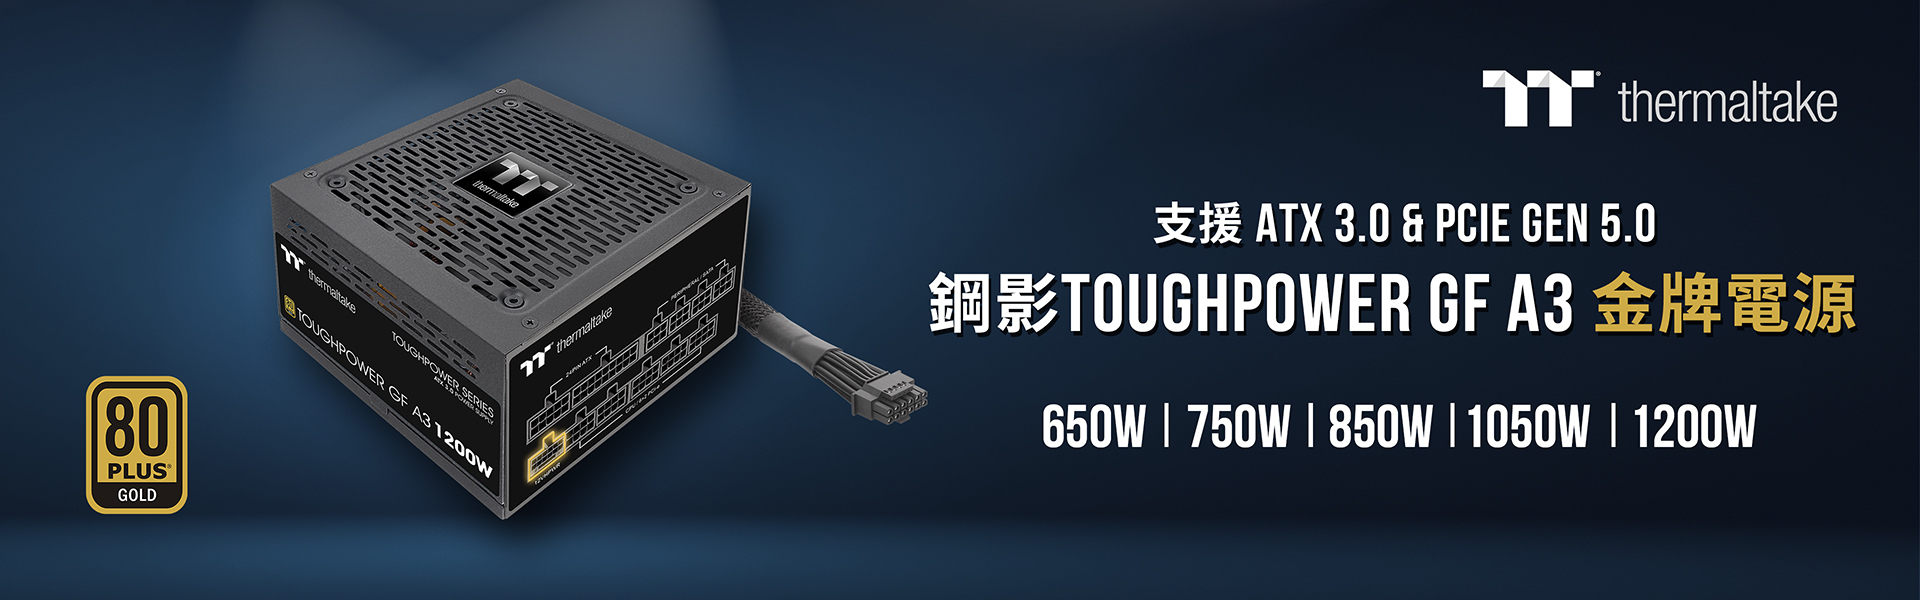 曜越推出全新鋼影Toughpower GF A3 金牌認證電源系列符合ATX 3.0 電源